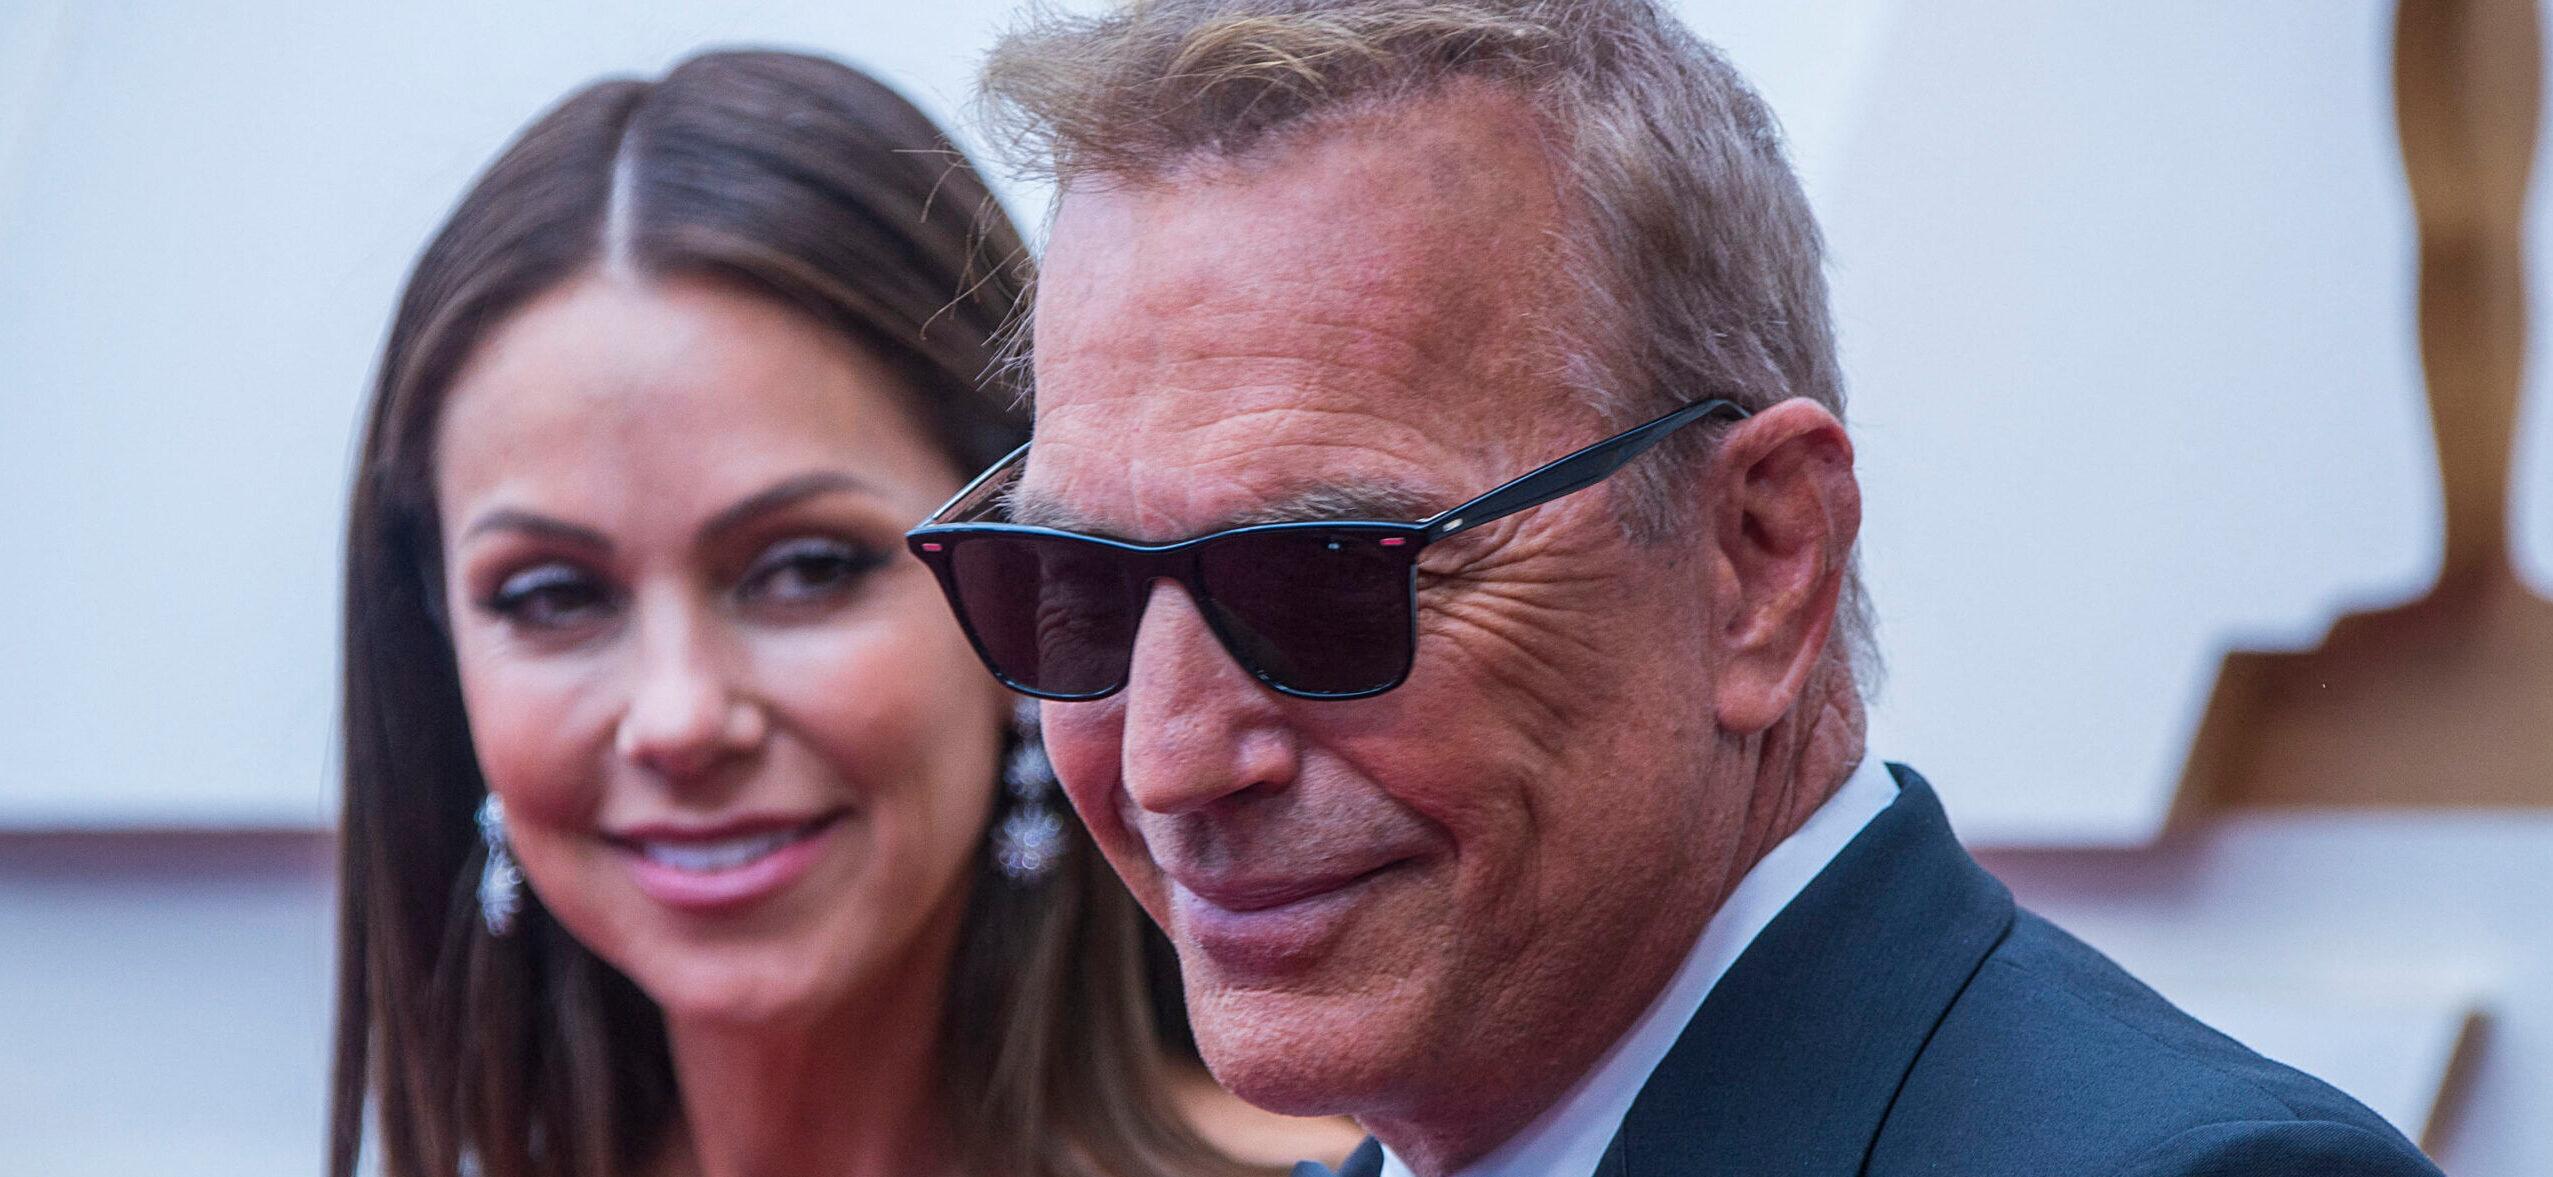 Kevin Costner’s Ex-Wife Christine Baumgartner Is Allegedly Dating The Actor’s Banker Friend